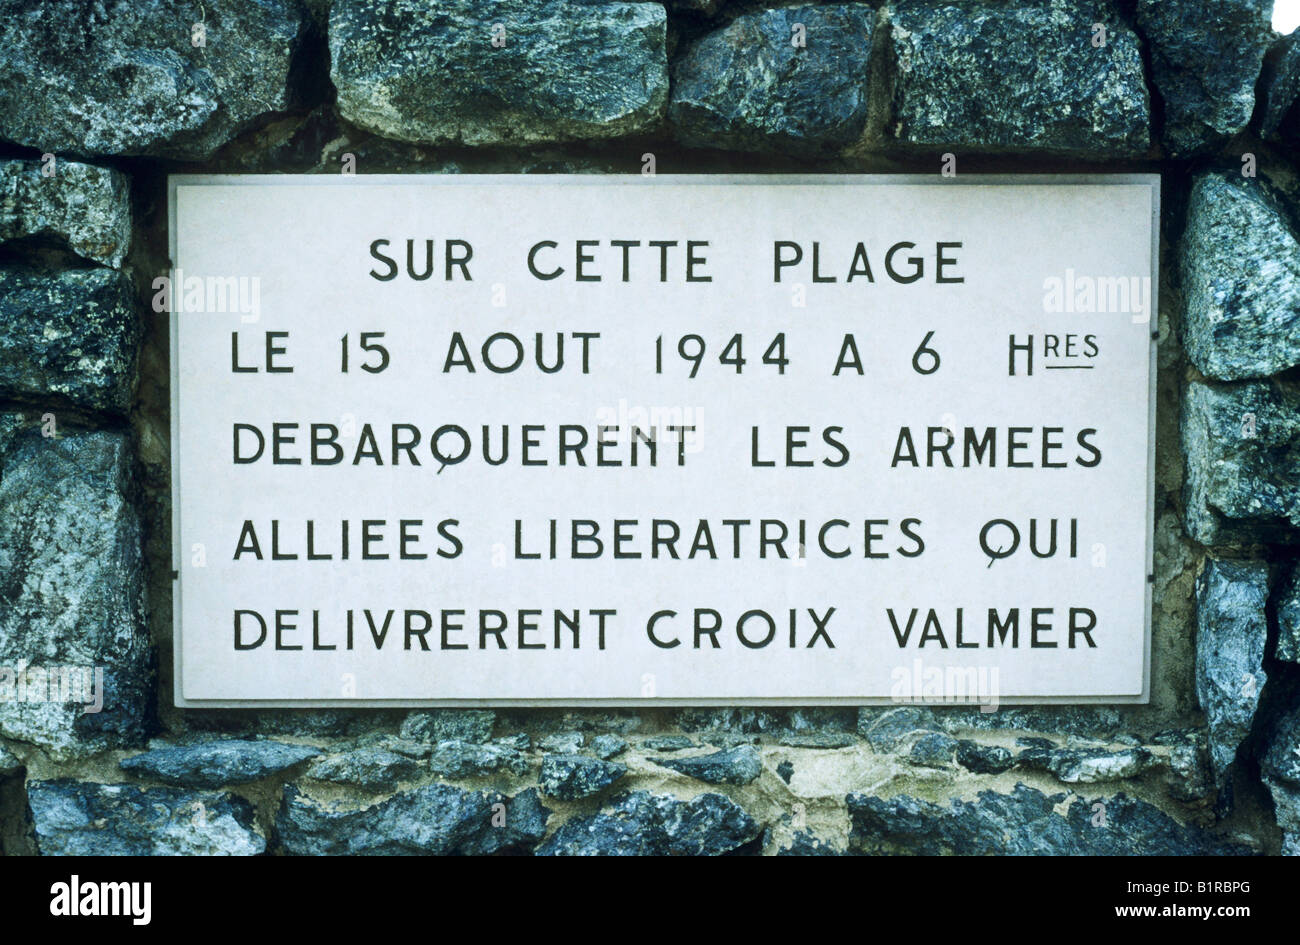 La Croix Valmer Beach di seconda guerra mondiale una lapide commemorativa Francia 1944 liberazione dagli alleati sbarco alleato posto Cote d'Azur Foto Stock